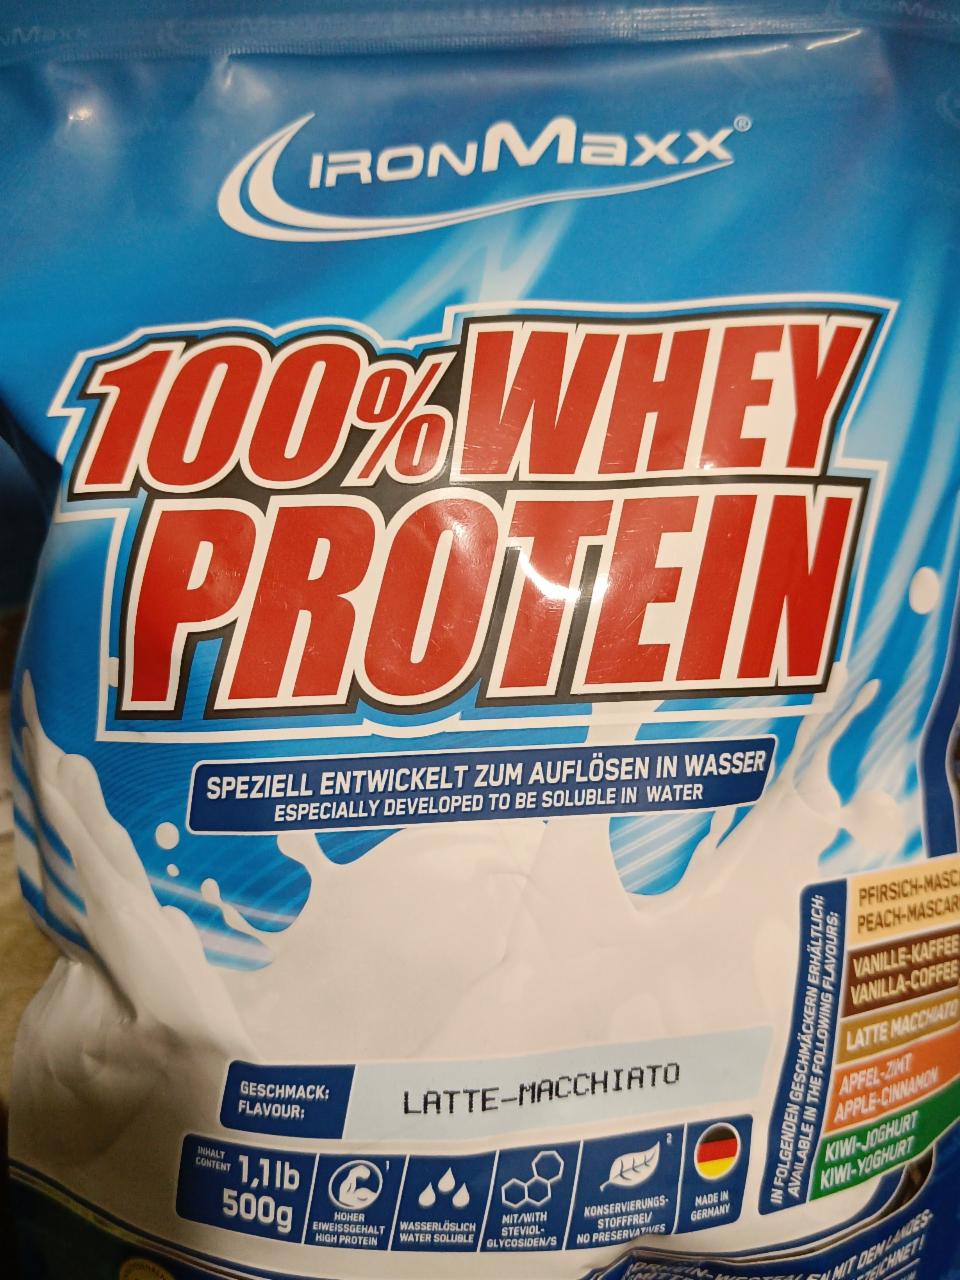 Fotografie - 100% whey protein Latte Macchiato IronMaxx